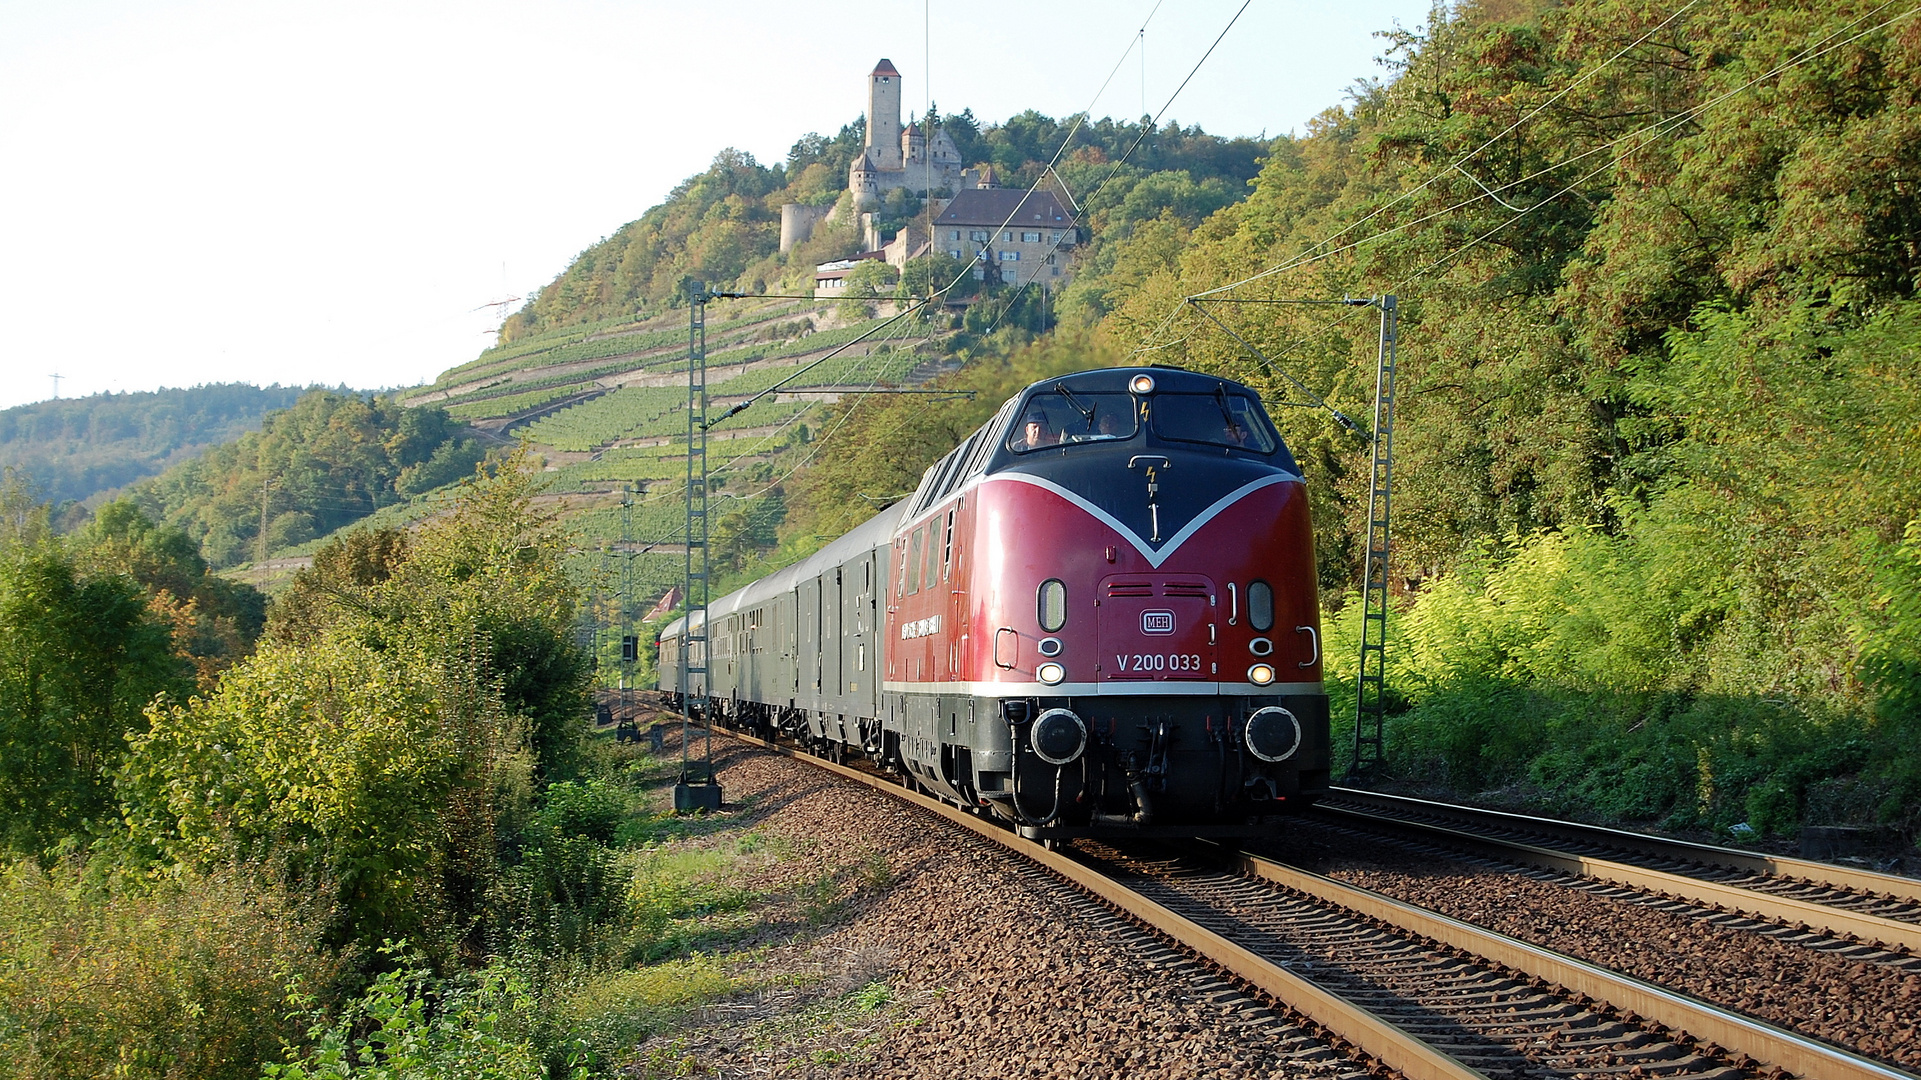 "Reisen wie vor 50 Jahren" auf der Neckartalbahn unterhalb Burg Hornberg 26.9.2009